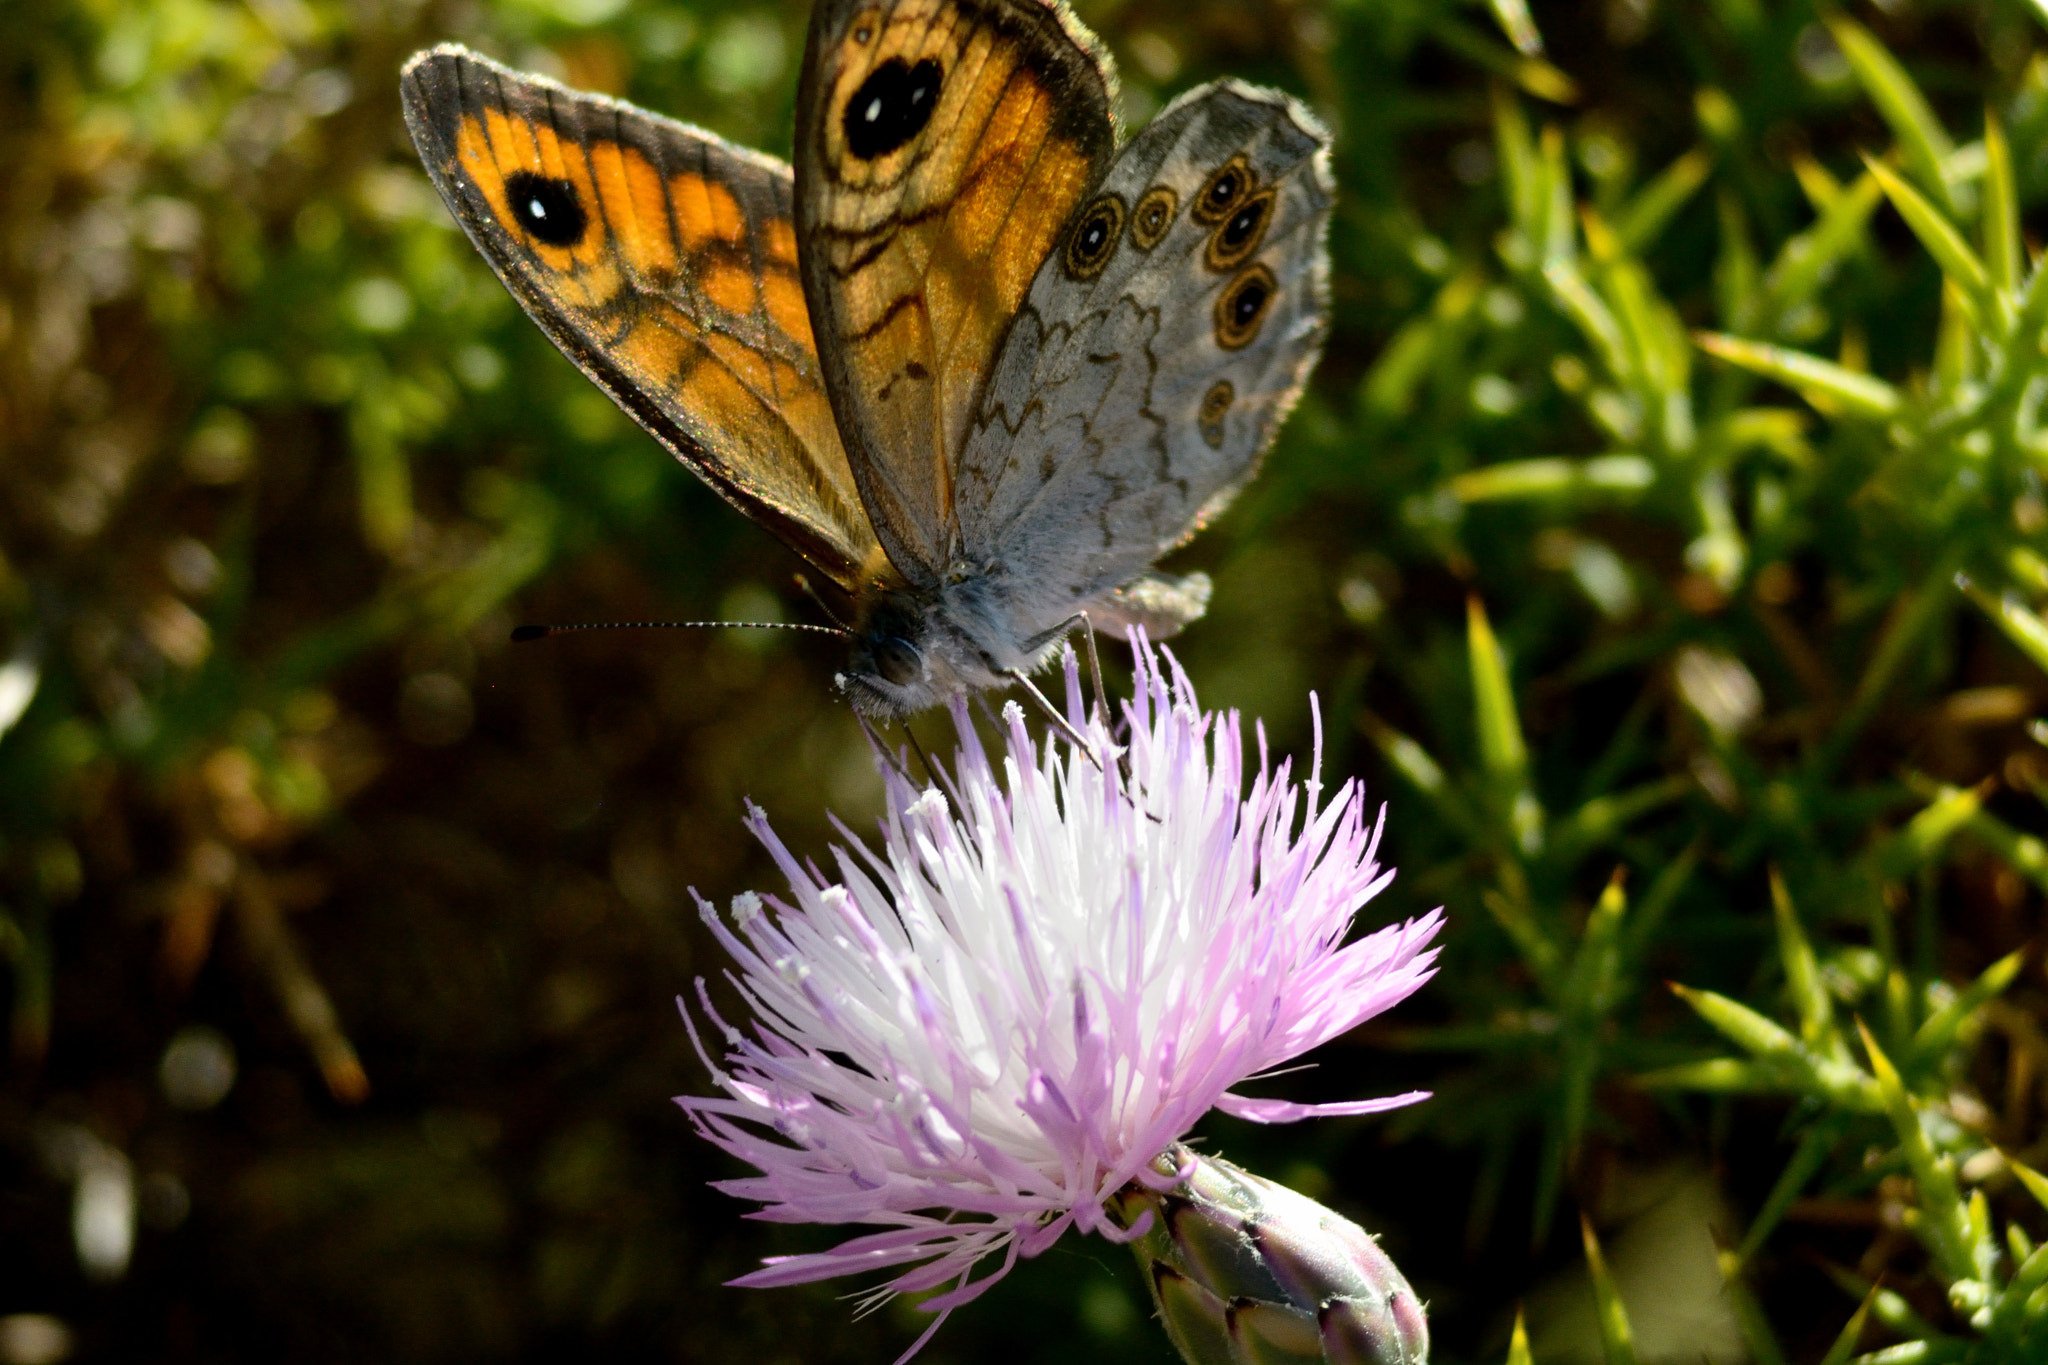 Nikon D7100 + AF Zoom-Nikkor 75-240mm f/4.5-5.6D sample photo. Butterfly photography